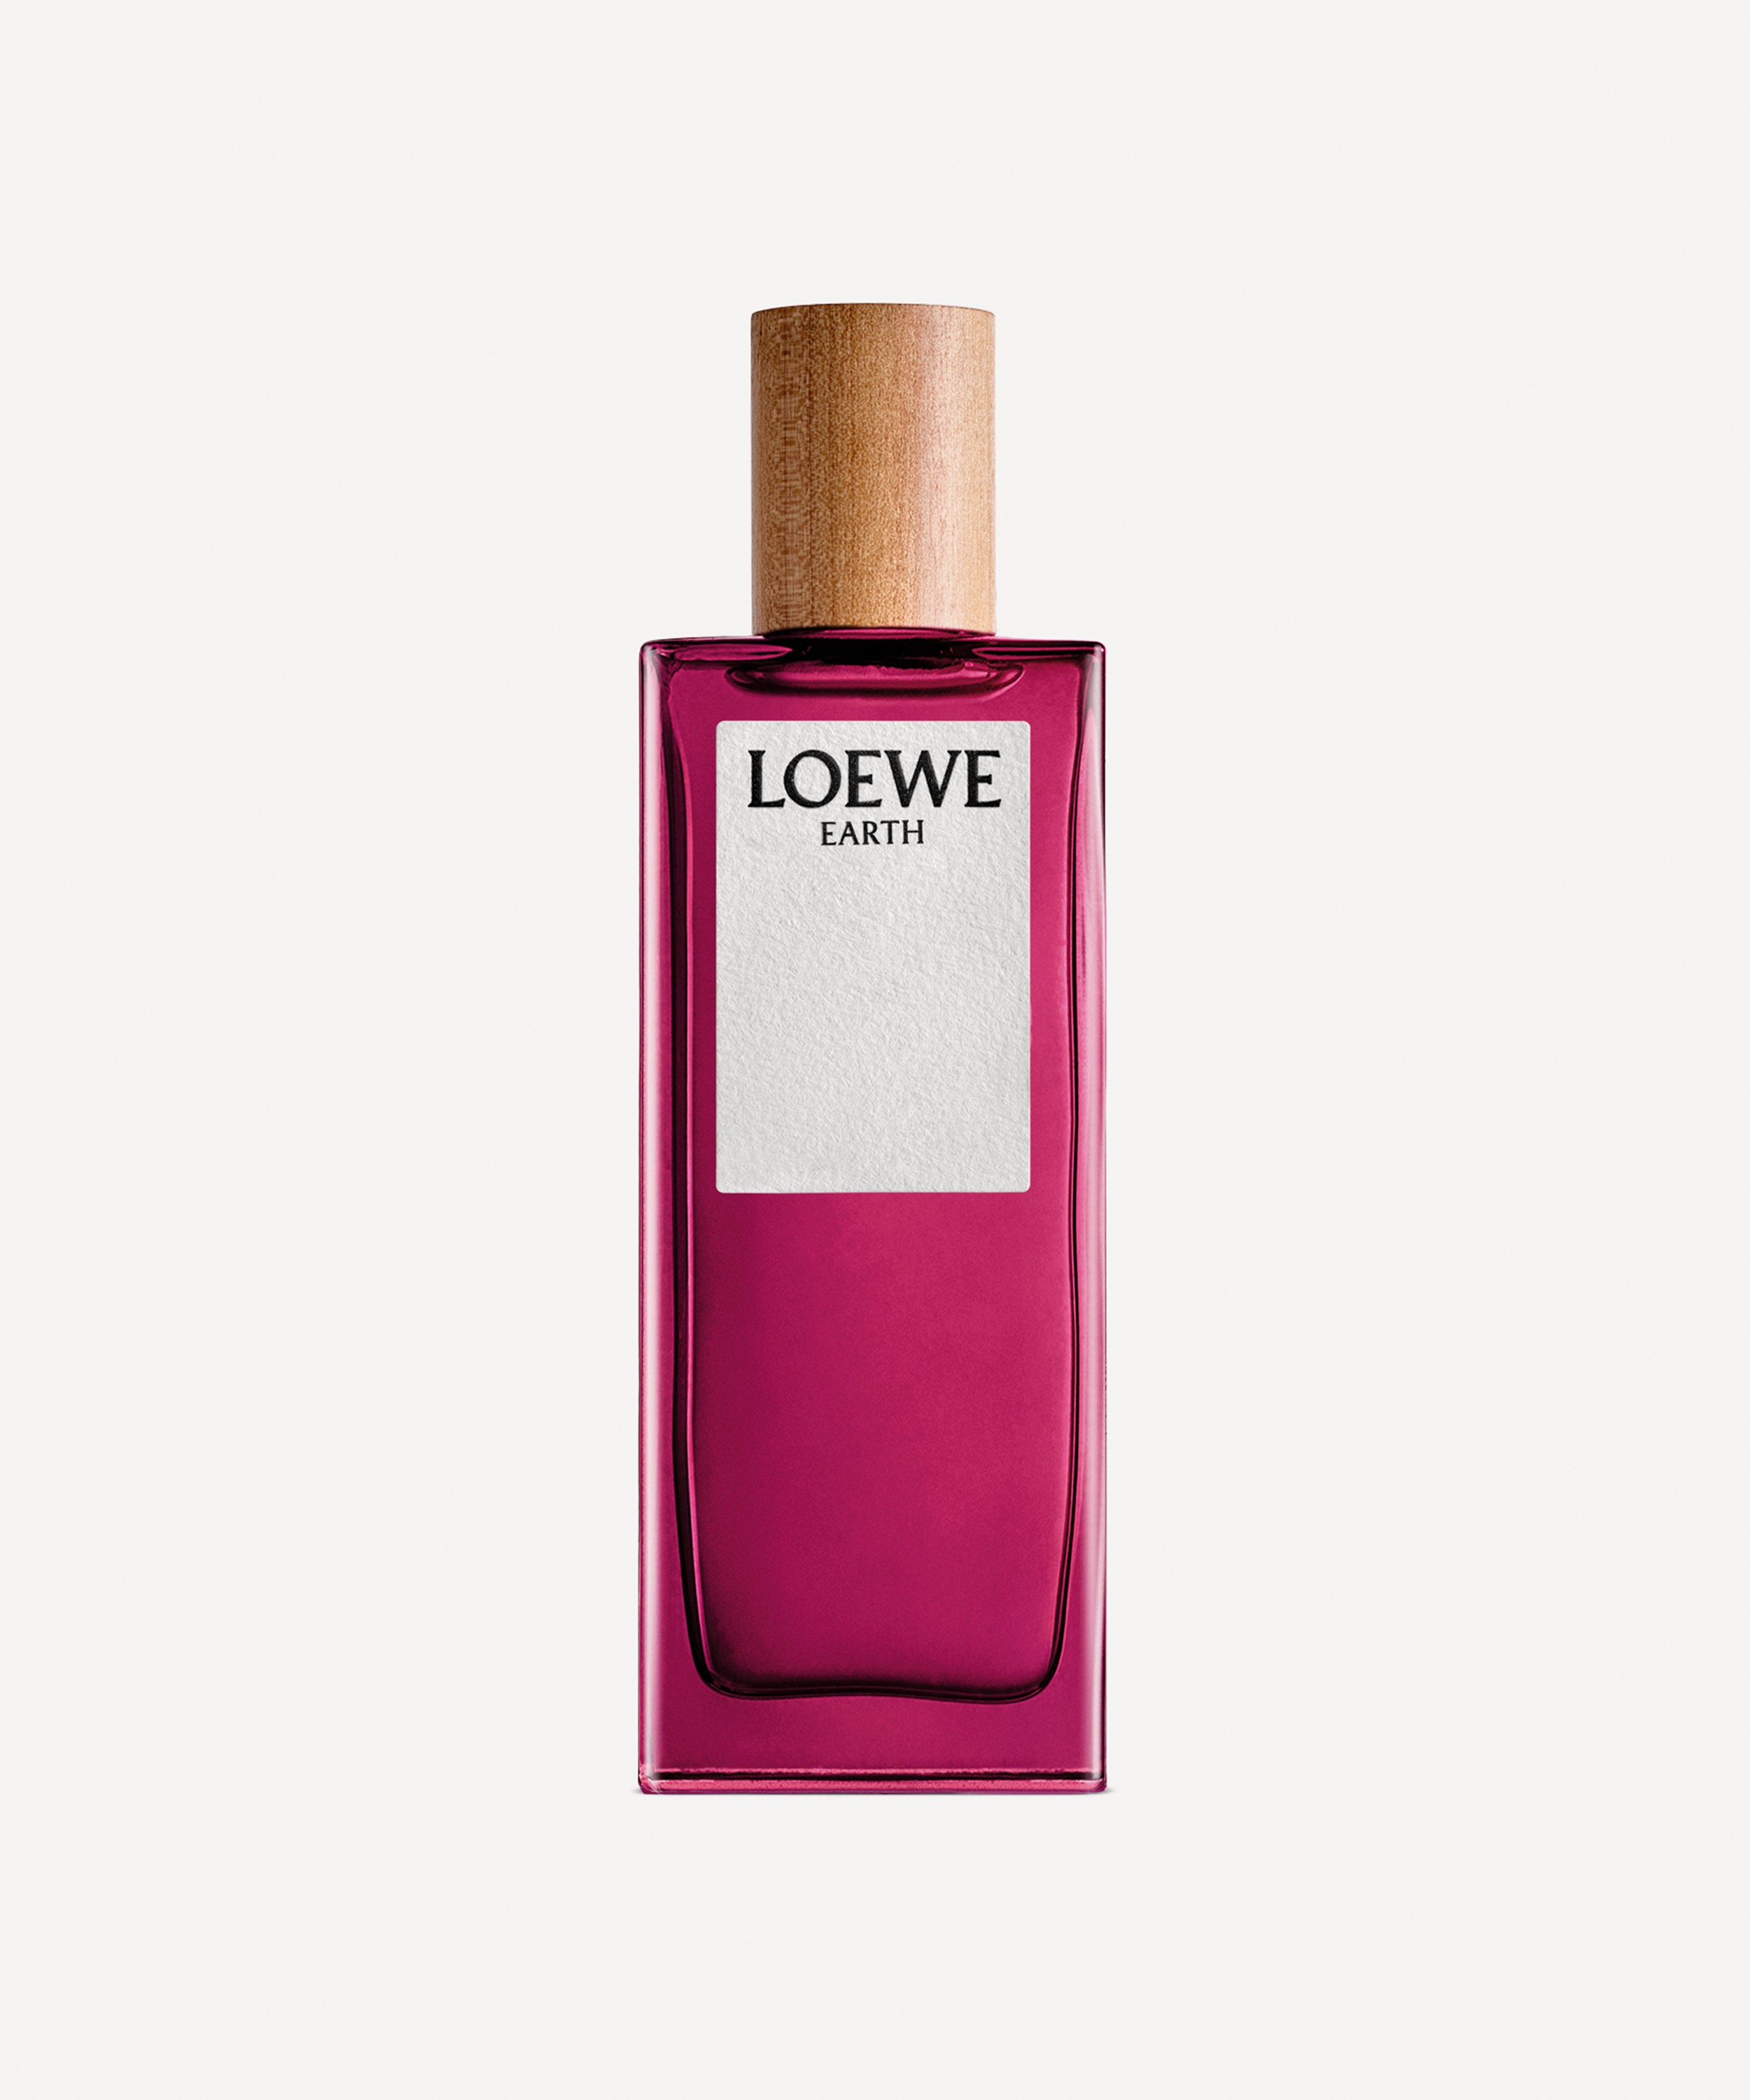 Loewe Earth Eau de Parfum 100ml | Liberty